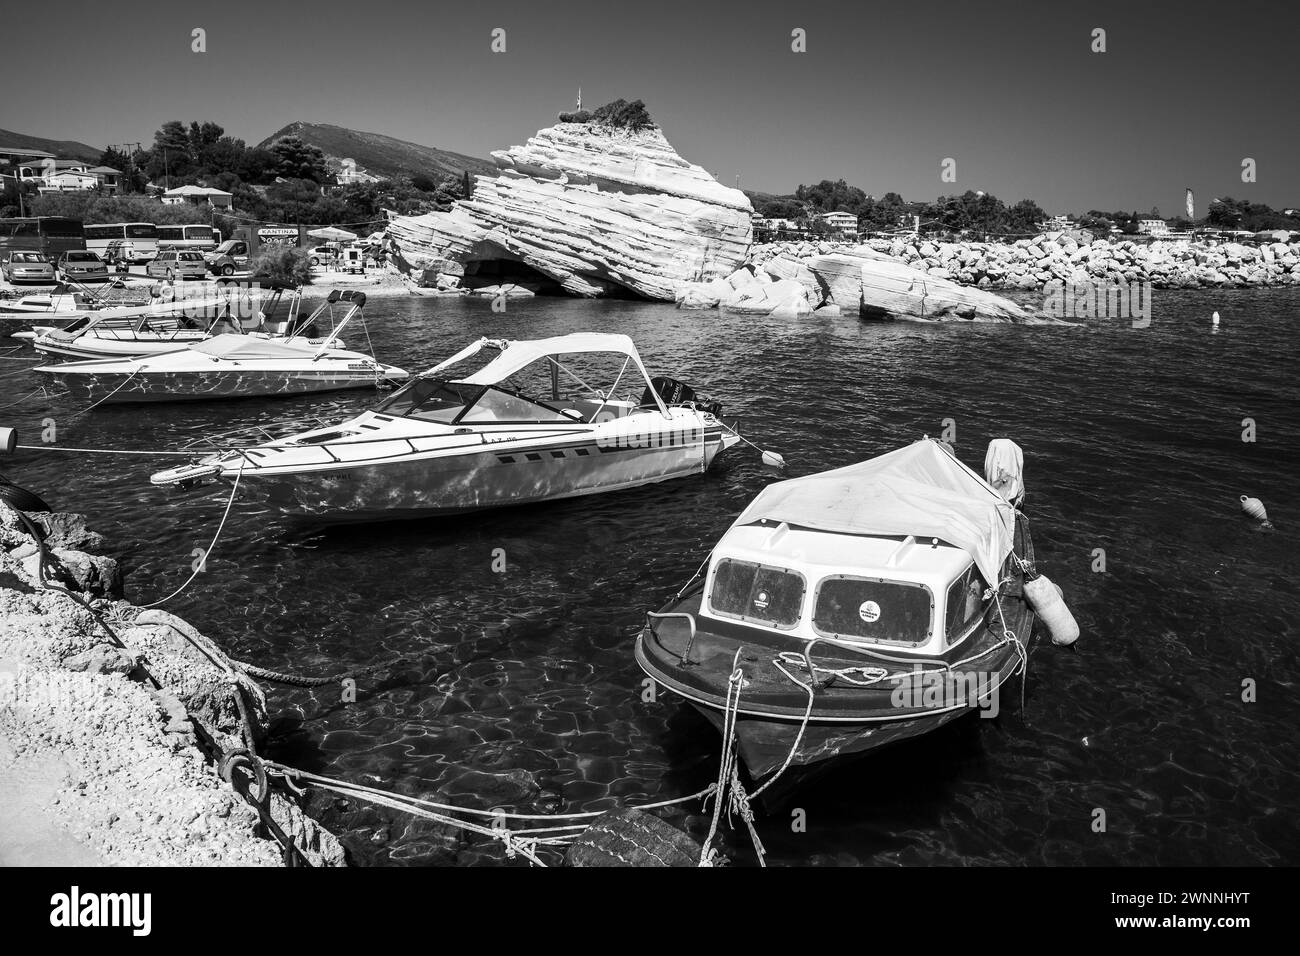 Zakynthos, Griechenland - 17. August 2016: Vergnügungs- und Angelmotorboote liegen im Hafen von Agios Sostis vor, Schwarzweiß-Foto Stockfoto